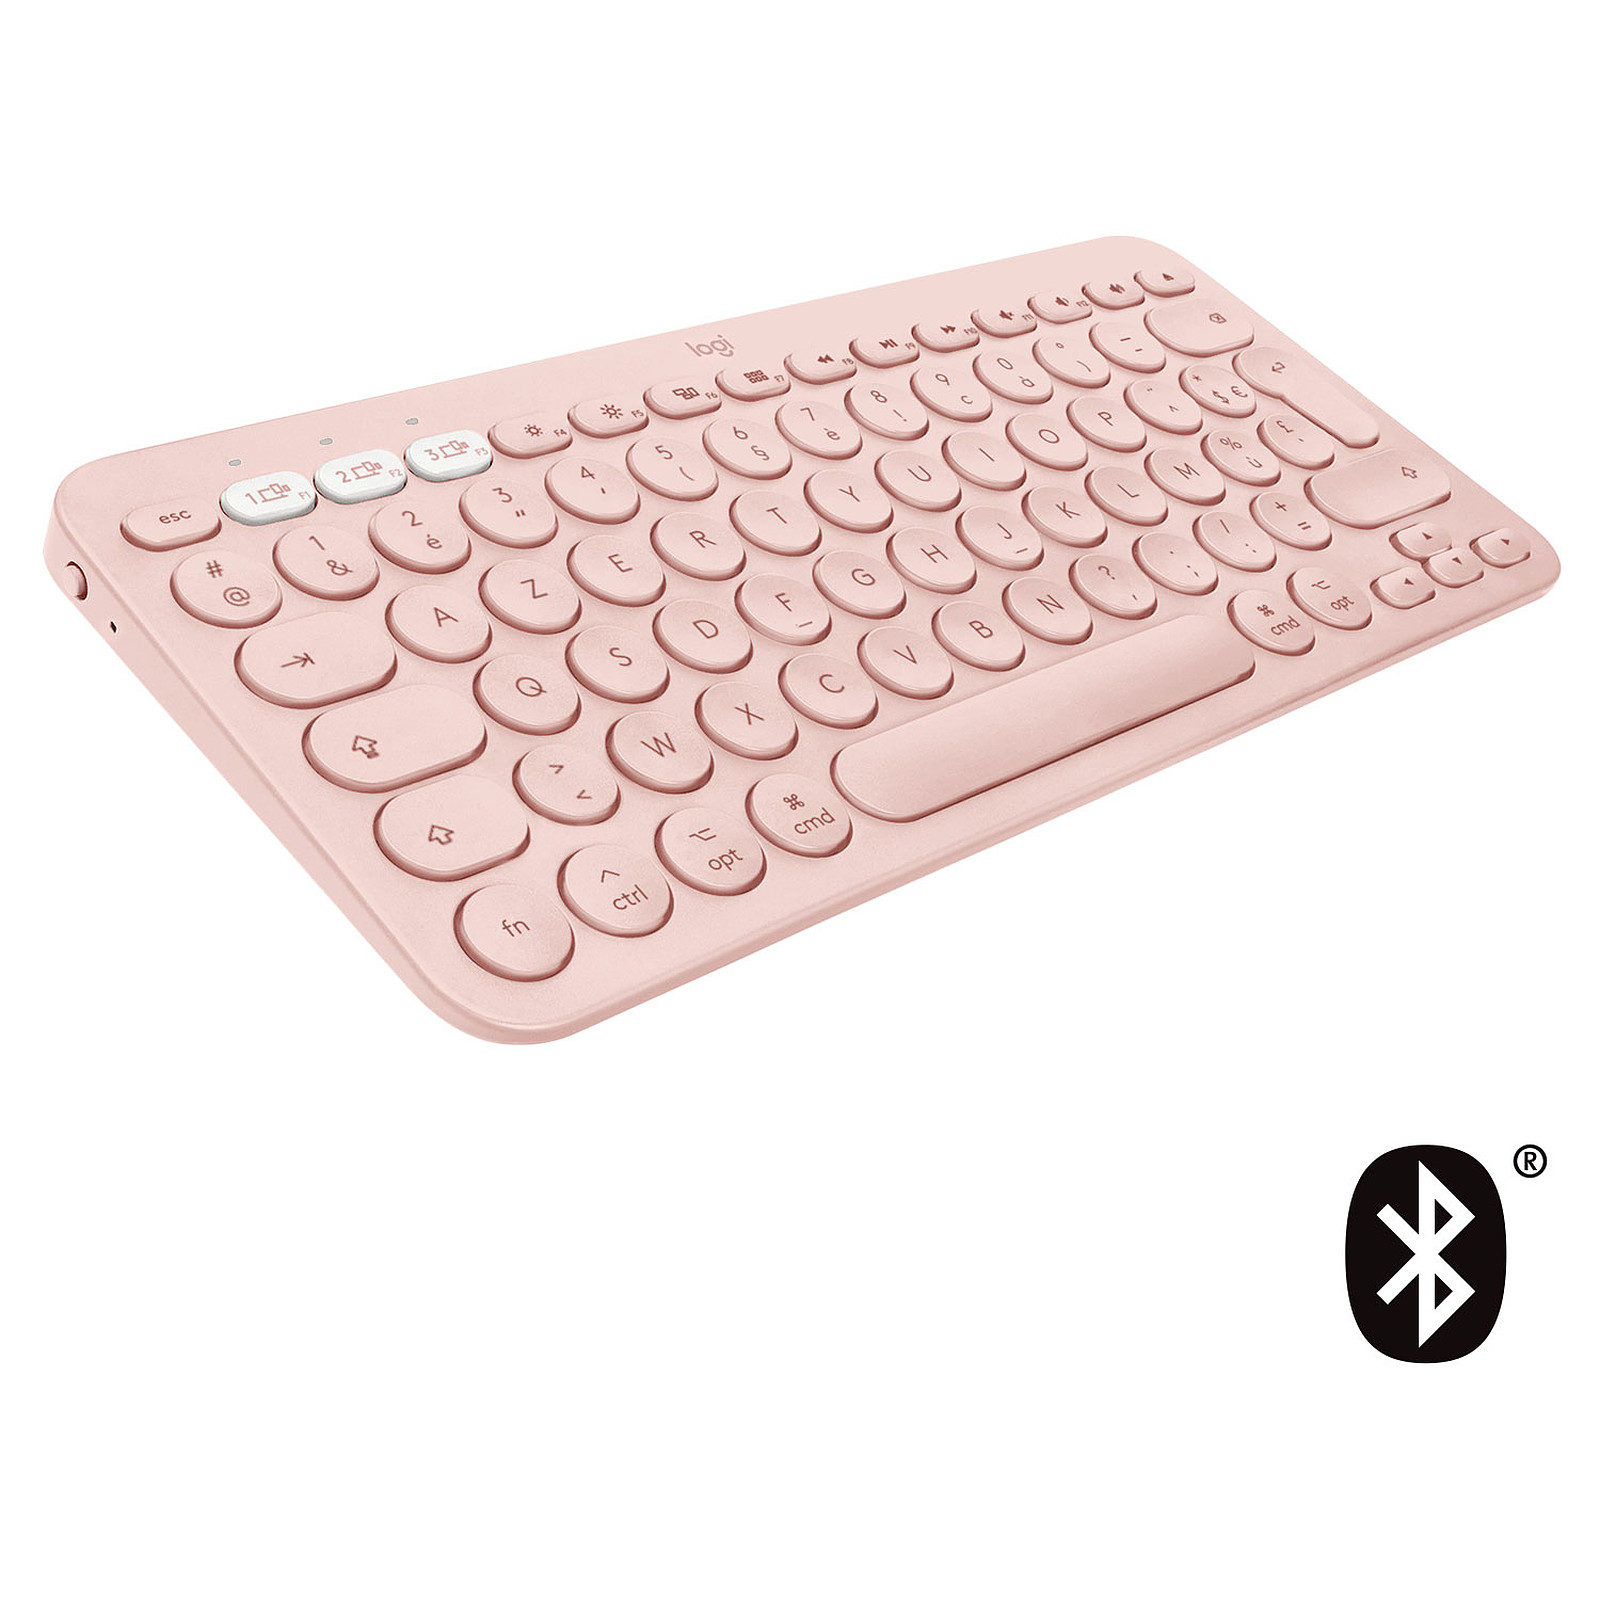 Logitech K380 Multi-Device Bluetooth Keyboard for Mac (Rose) - Clavier tablette Logitech